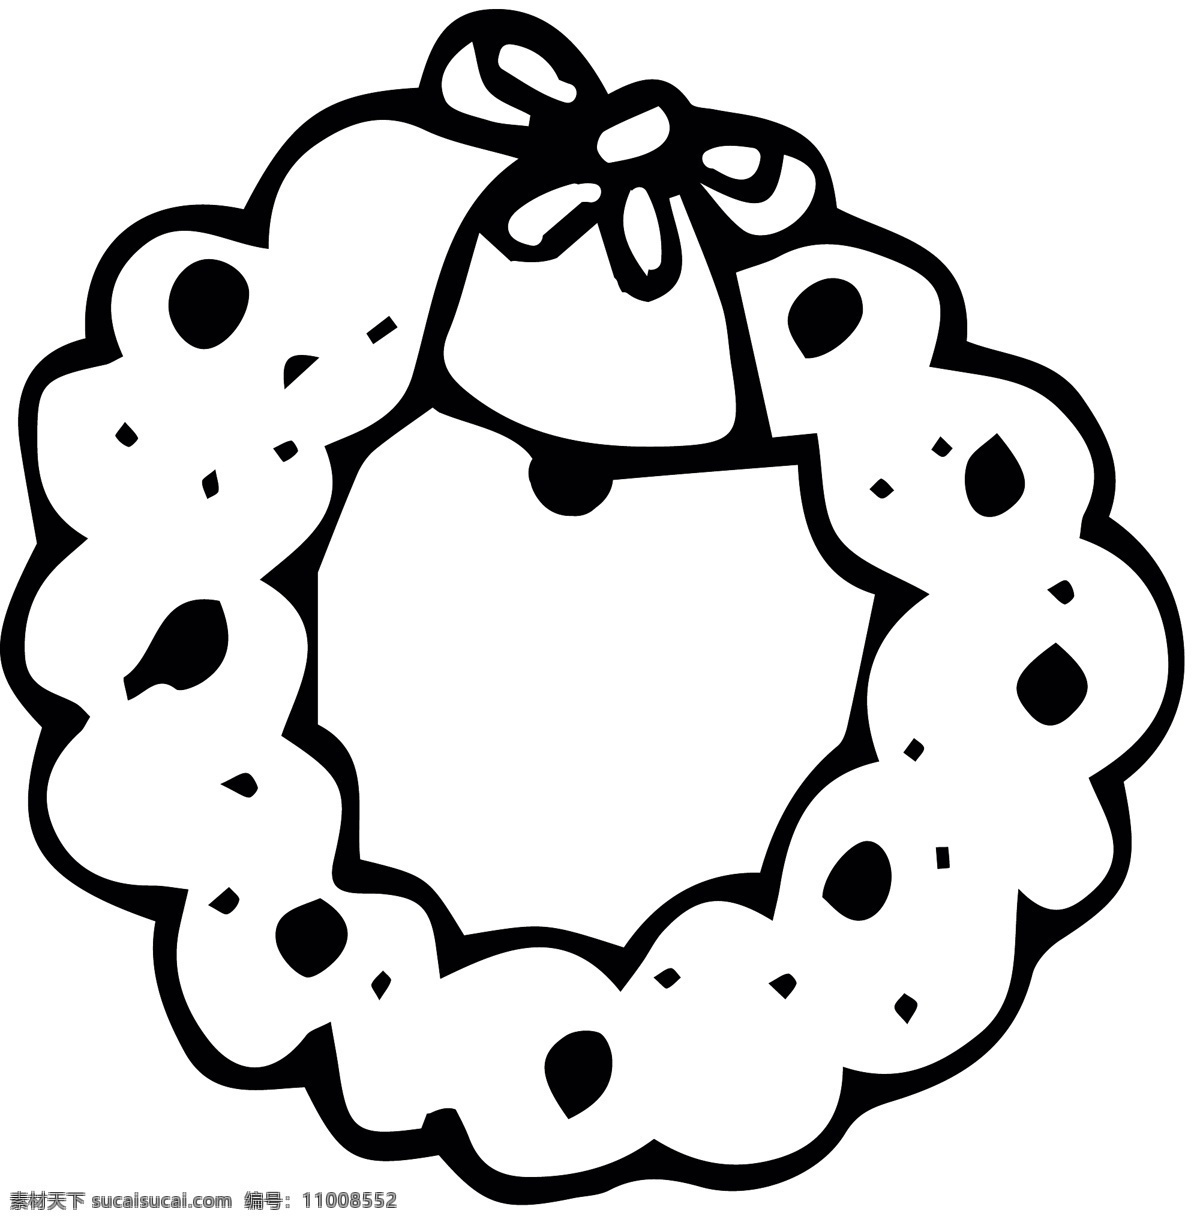 简约 手绘 icon 图标 扁平 单色 多色 精美 可爱 商务 圆润 立体 涂鸦 圣诞帽 圣诞树